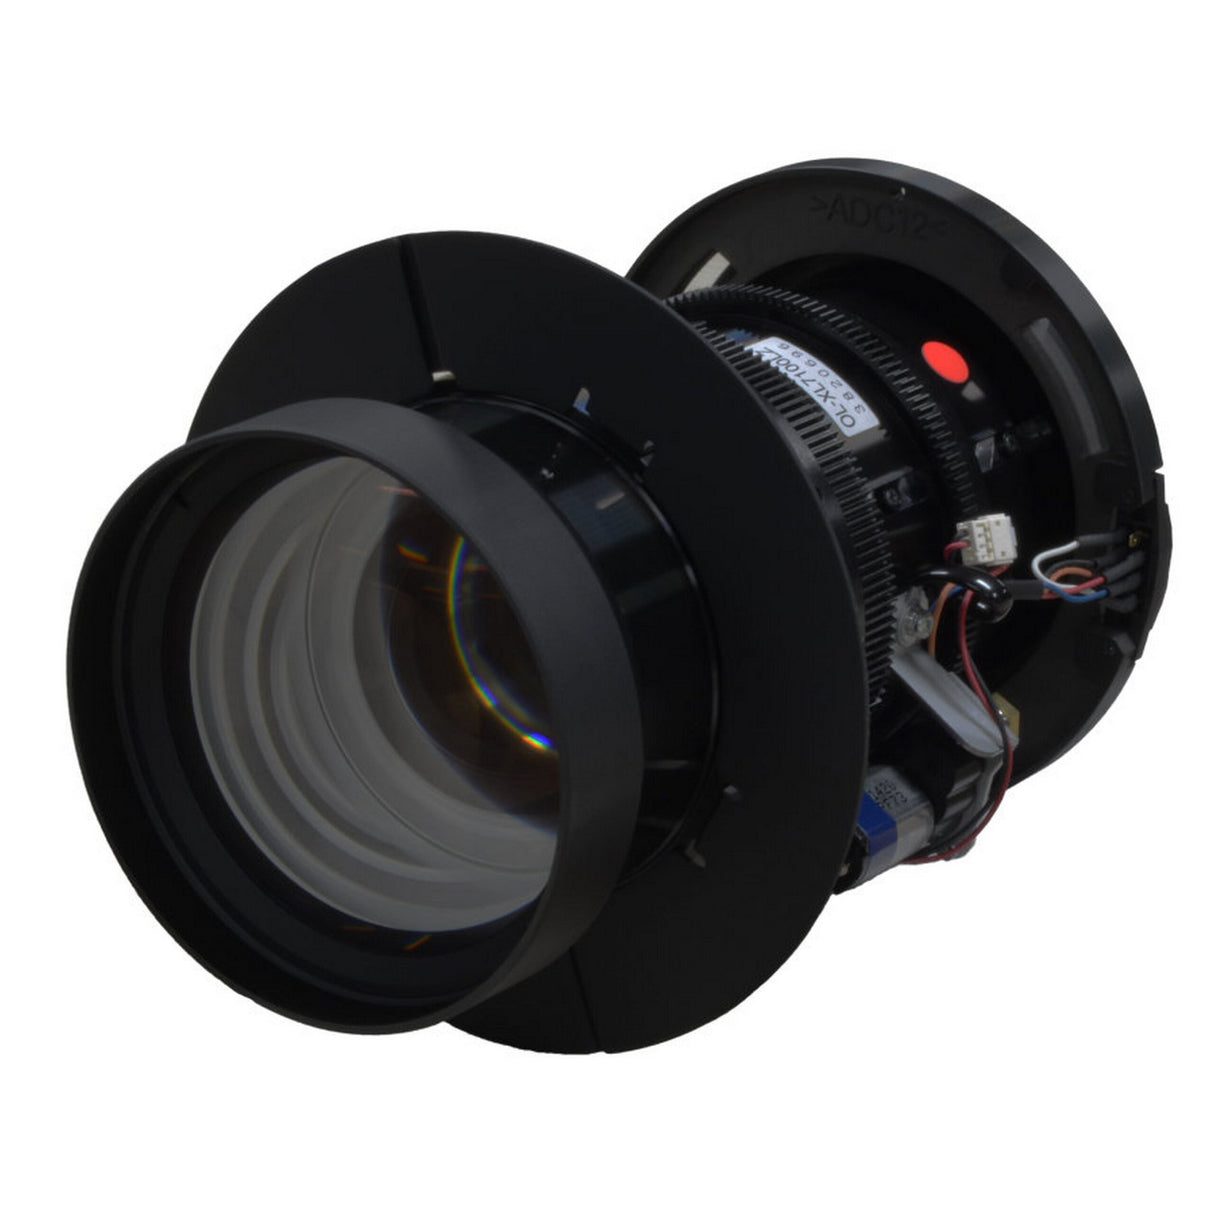 Eiki AH-E23010 Projector Lens for EK-510U/L, EK-500U/L, EK-511W/L, EK-512X/L